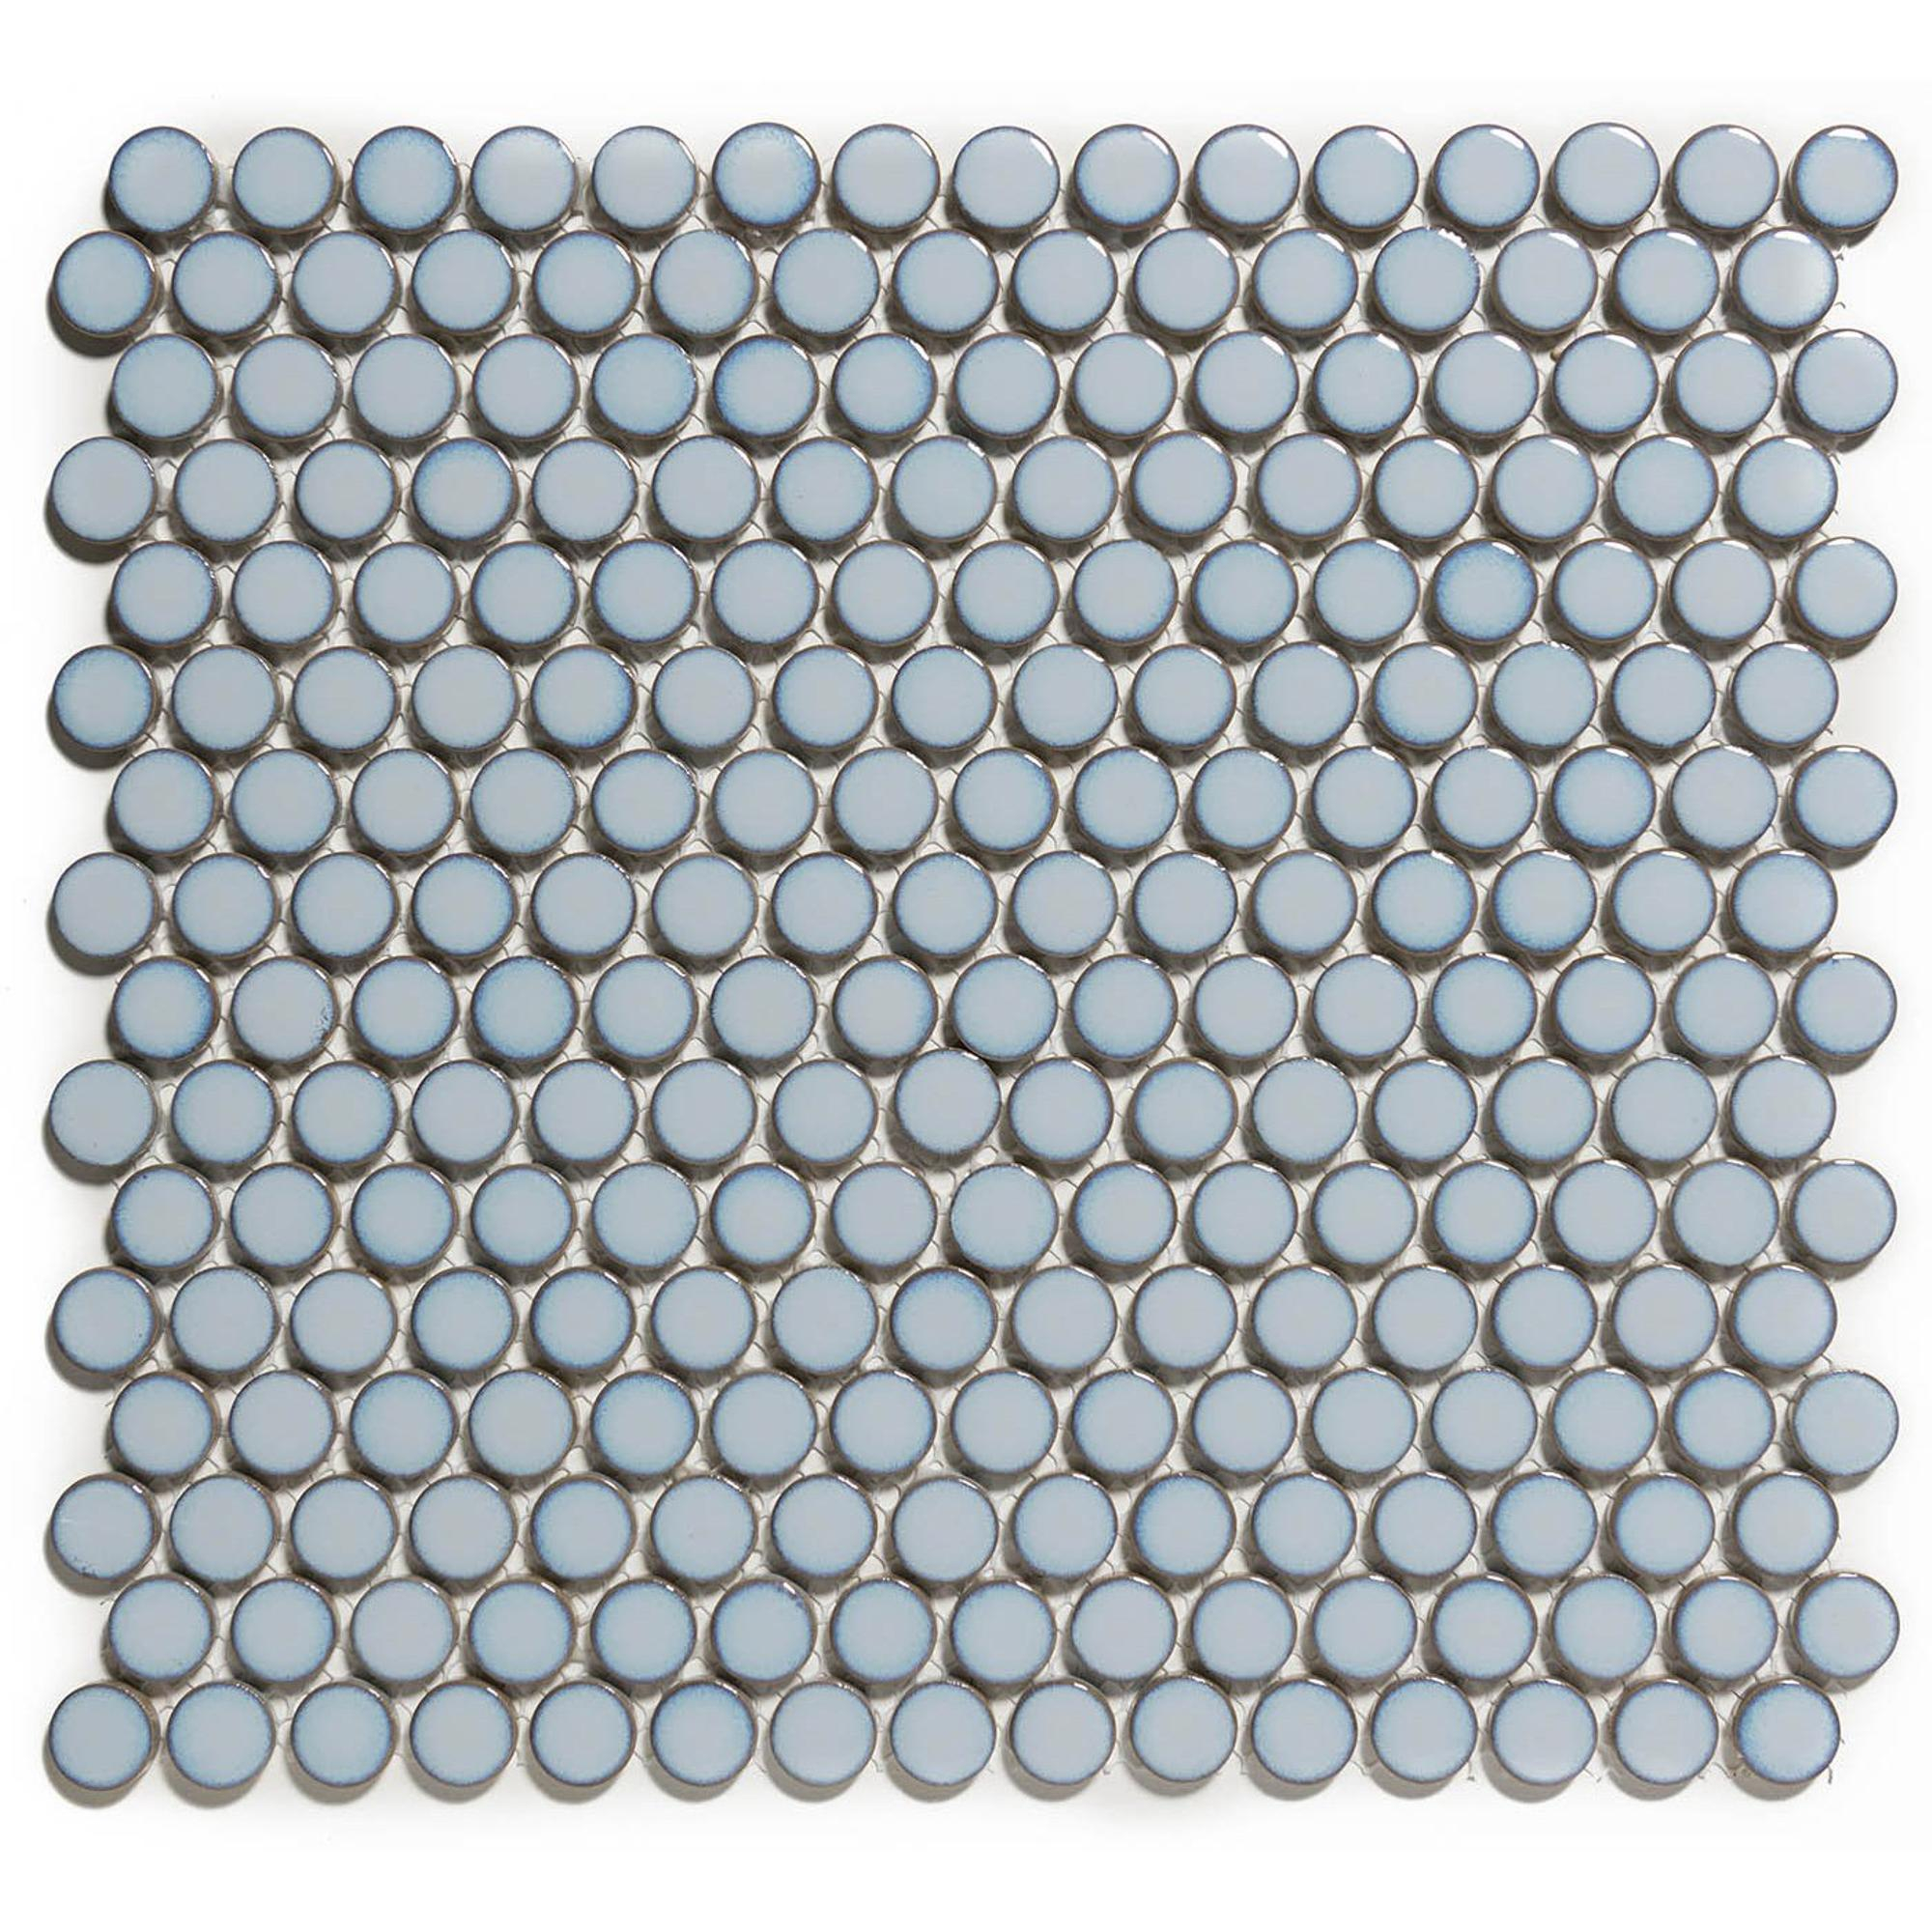 Carreau en grès cérame aspect mosaïque ronde blanche - Série PENNY REALONDA